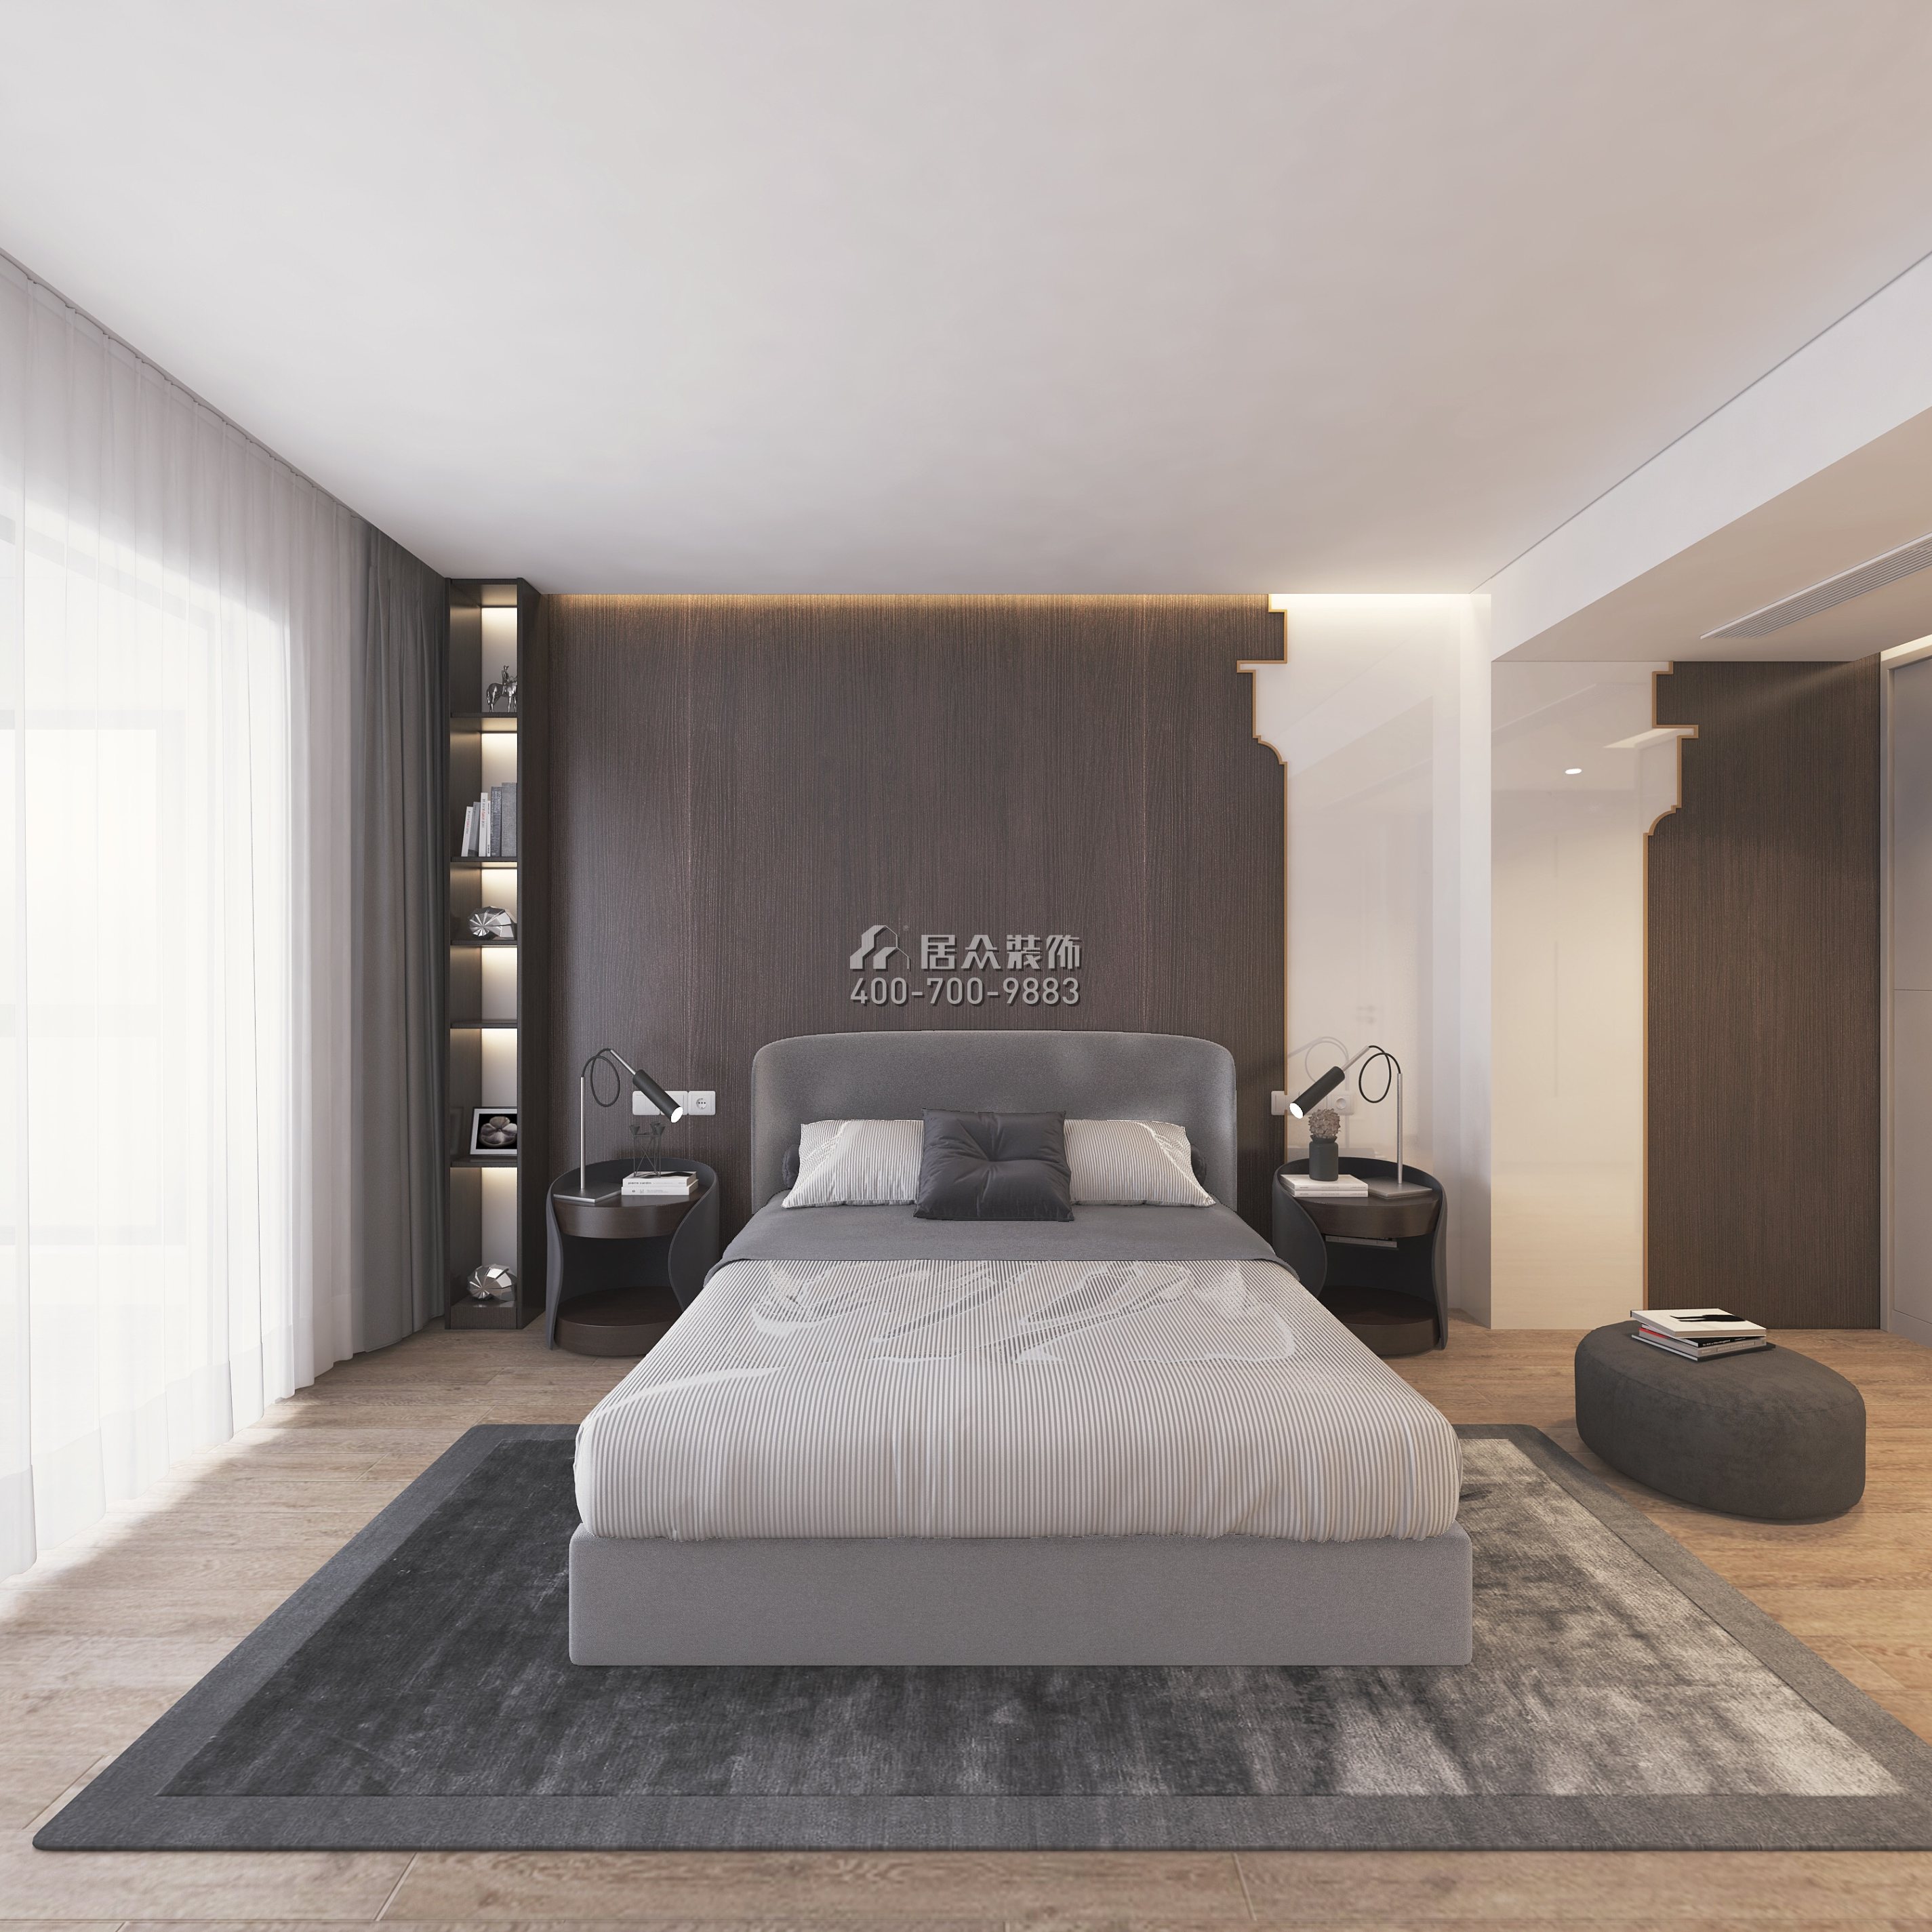 泓鑫城市花园250平方米混搭风格复式户型卧室装修效果图